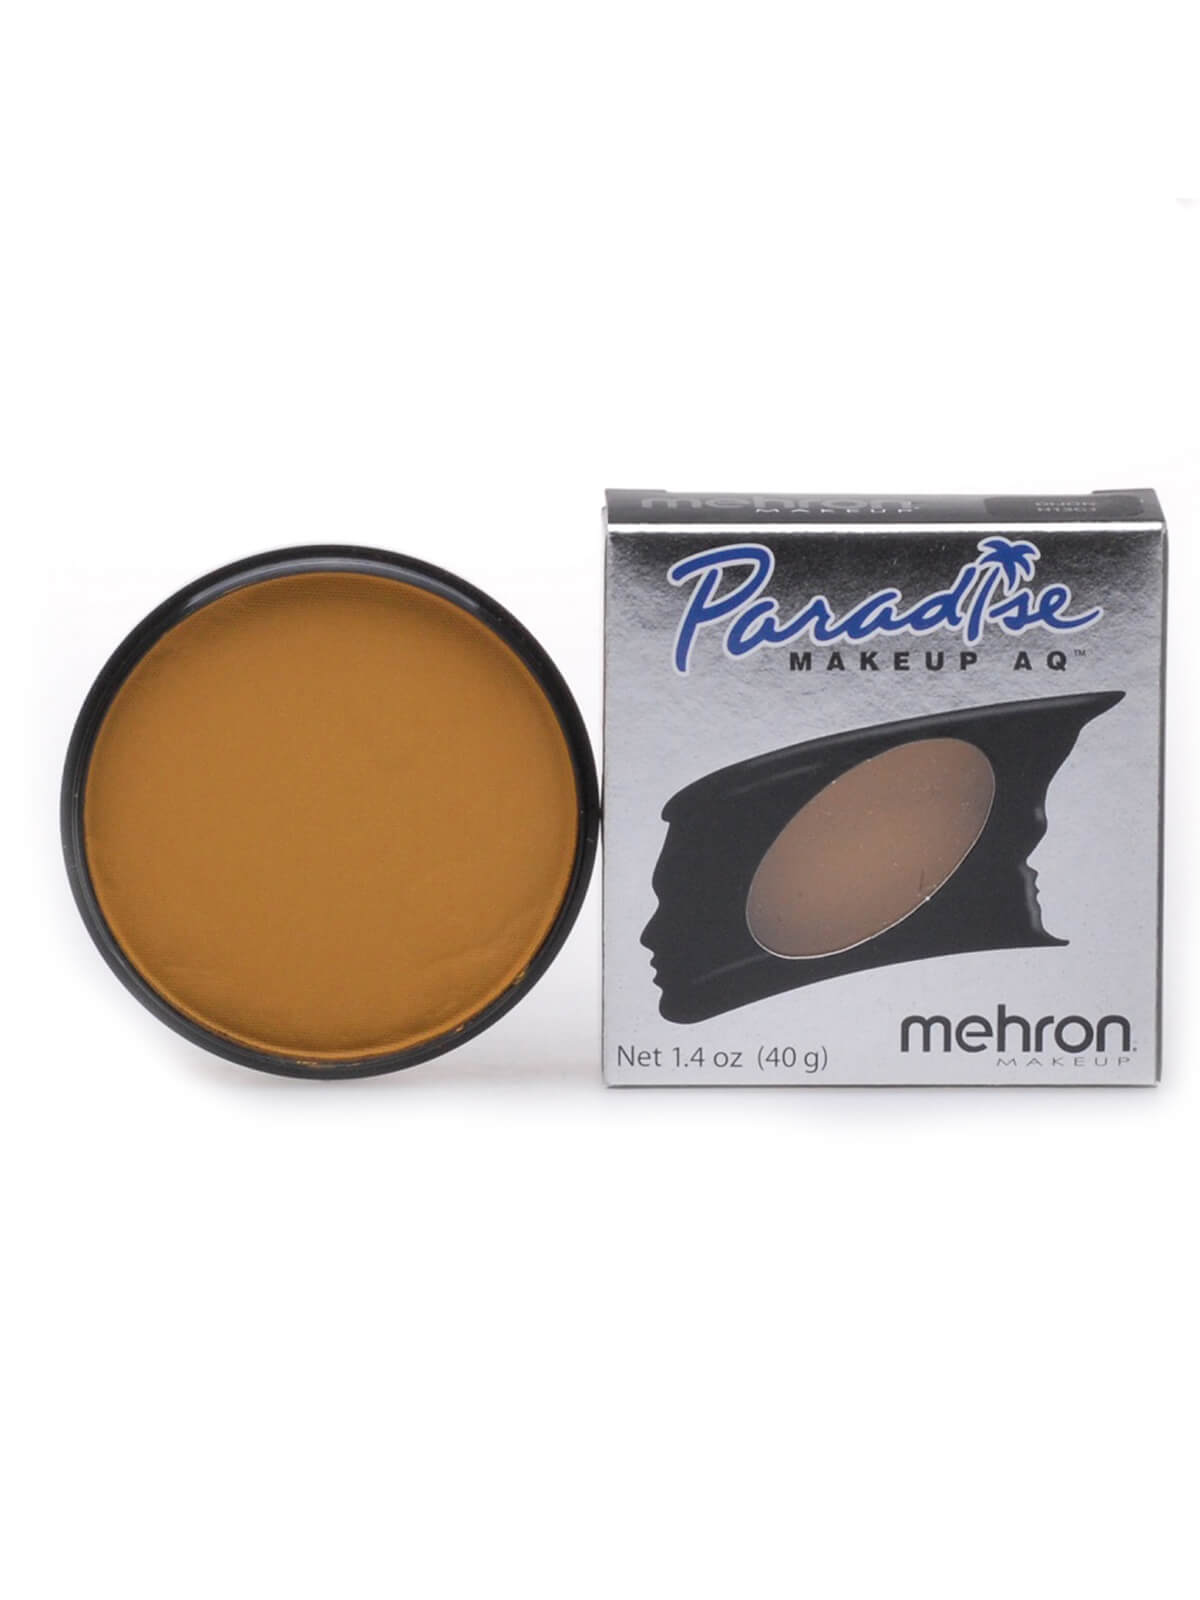 Mehron Paradise Makeup AQ - Nuance - Dijon